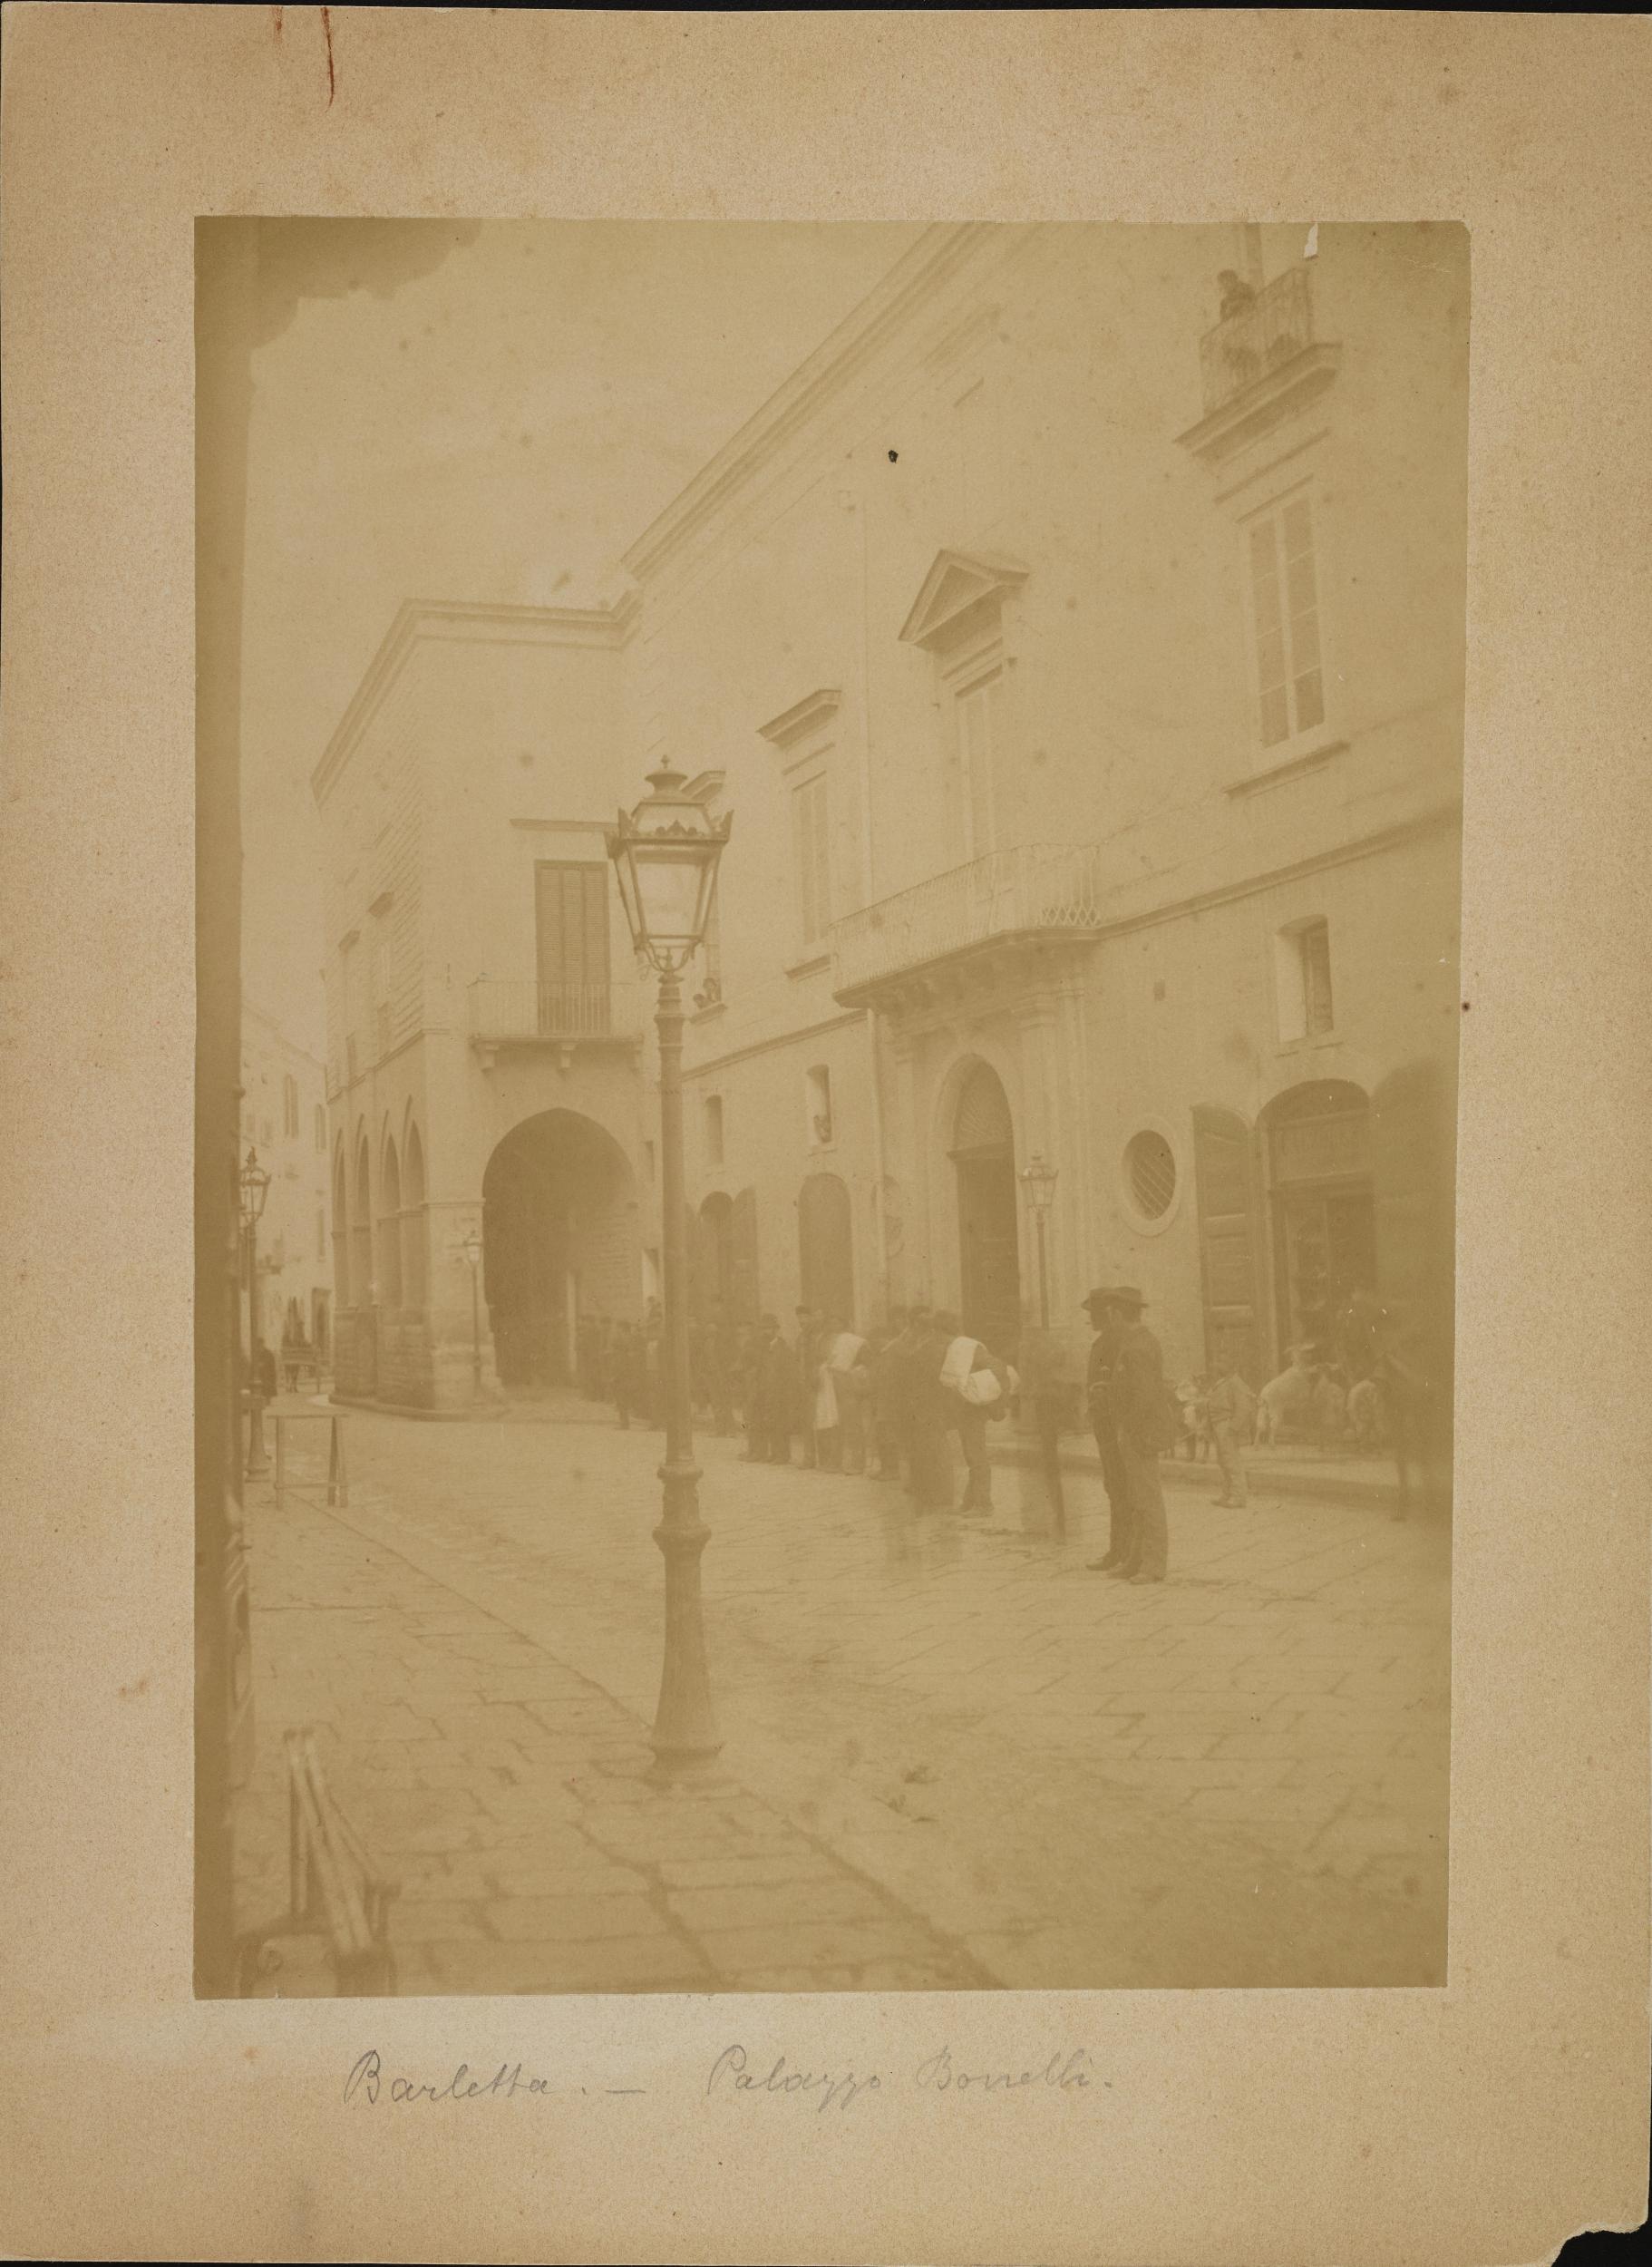 Fotografo non identificato, Barletta - Palazzo Bonelli, 1880 ca., albumina/carta, 17x23,8 cm, MPI312824